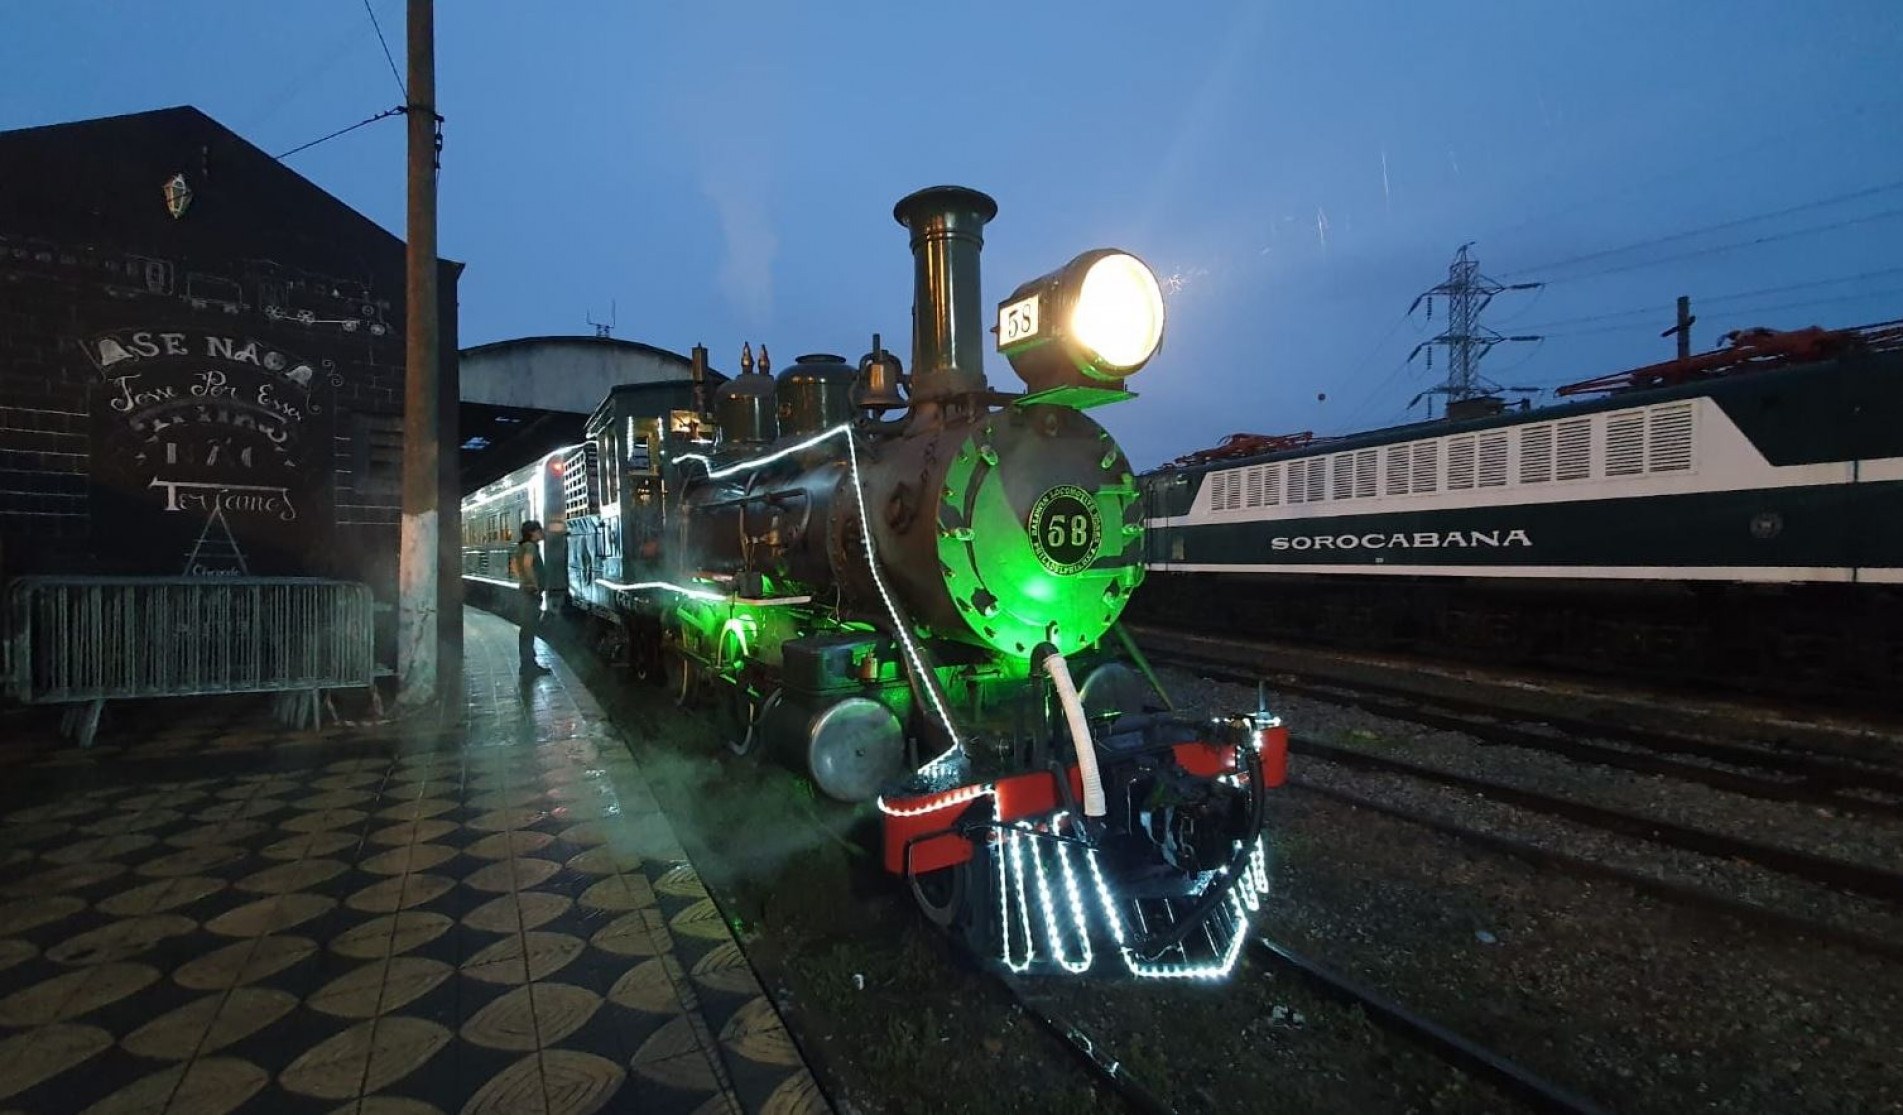 Locomotiva fez 24 passeios dentro da programação do Natal.